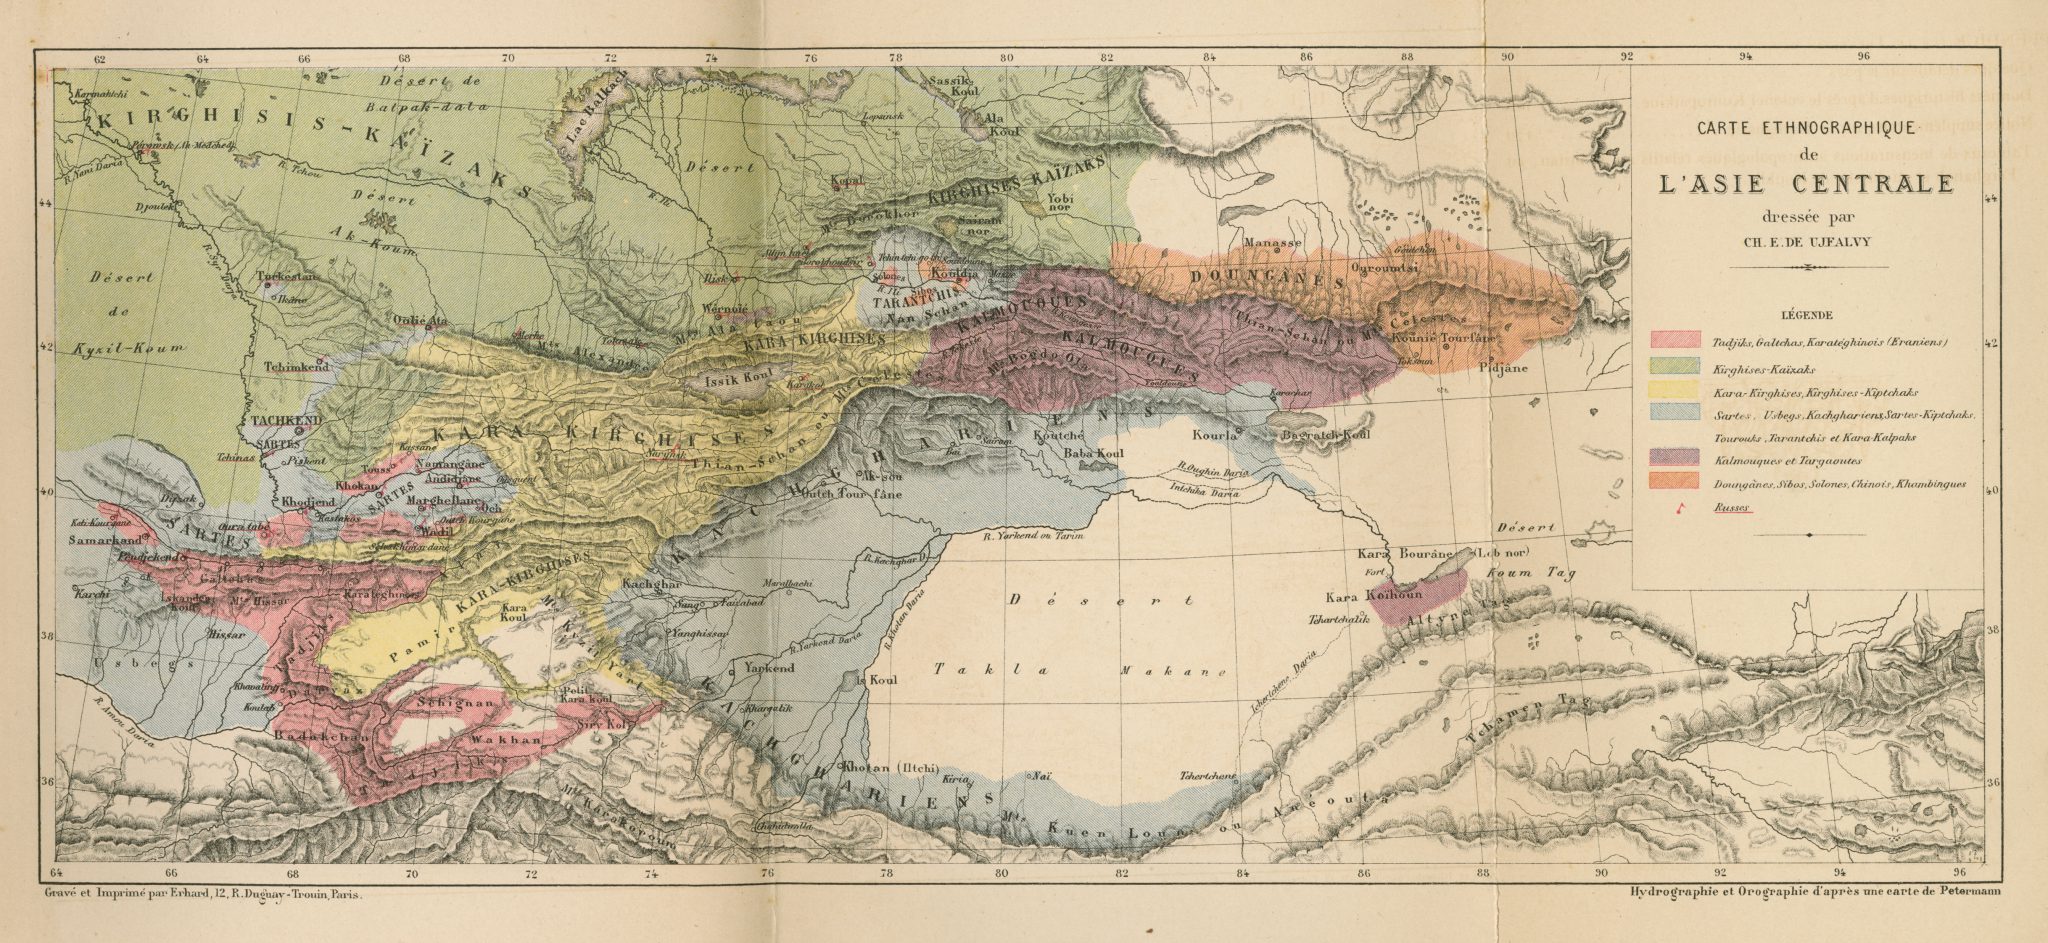 Carte ethnographique de l'Asie centrale 1878